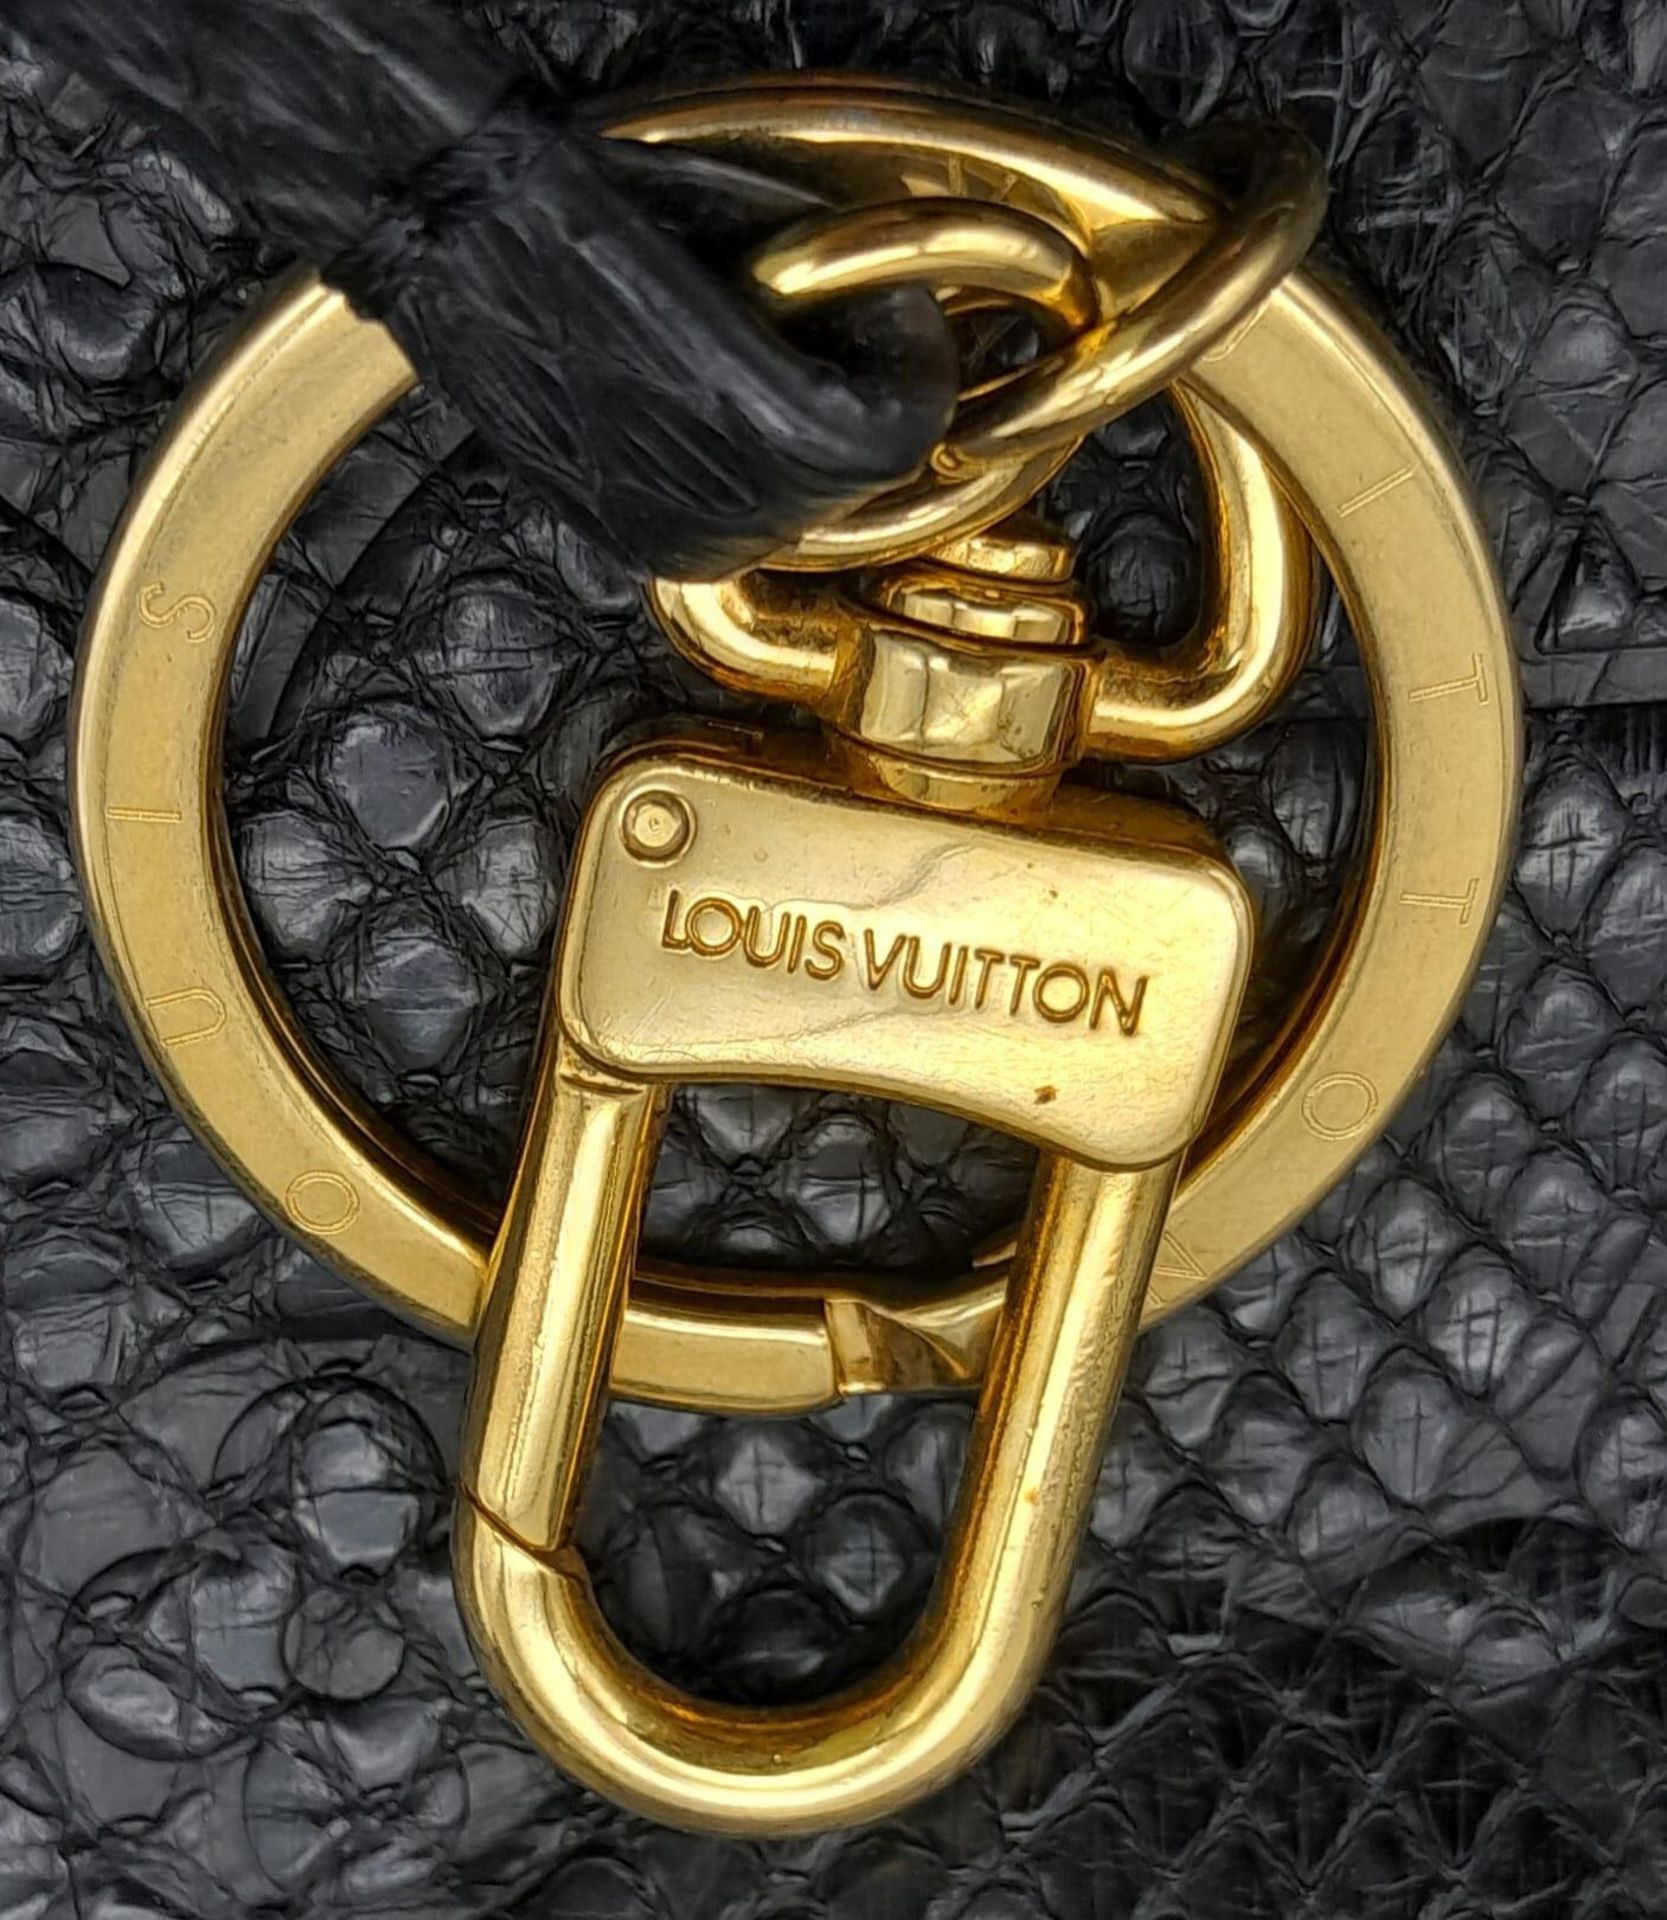 A Louis Vuitton Monogram Black Snakeskin Tote Bag. Gold tone hardware. Spacious black leather - Bild 7 aus 8